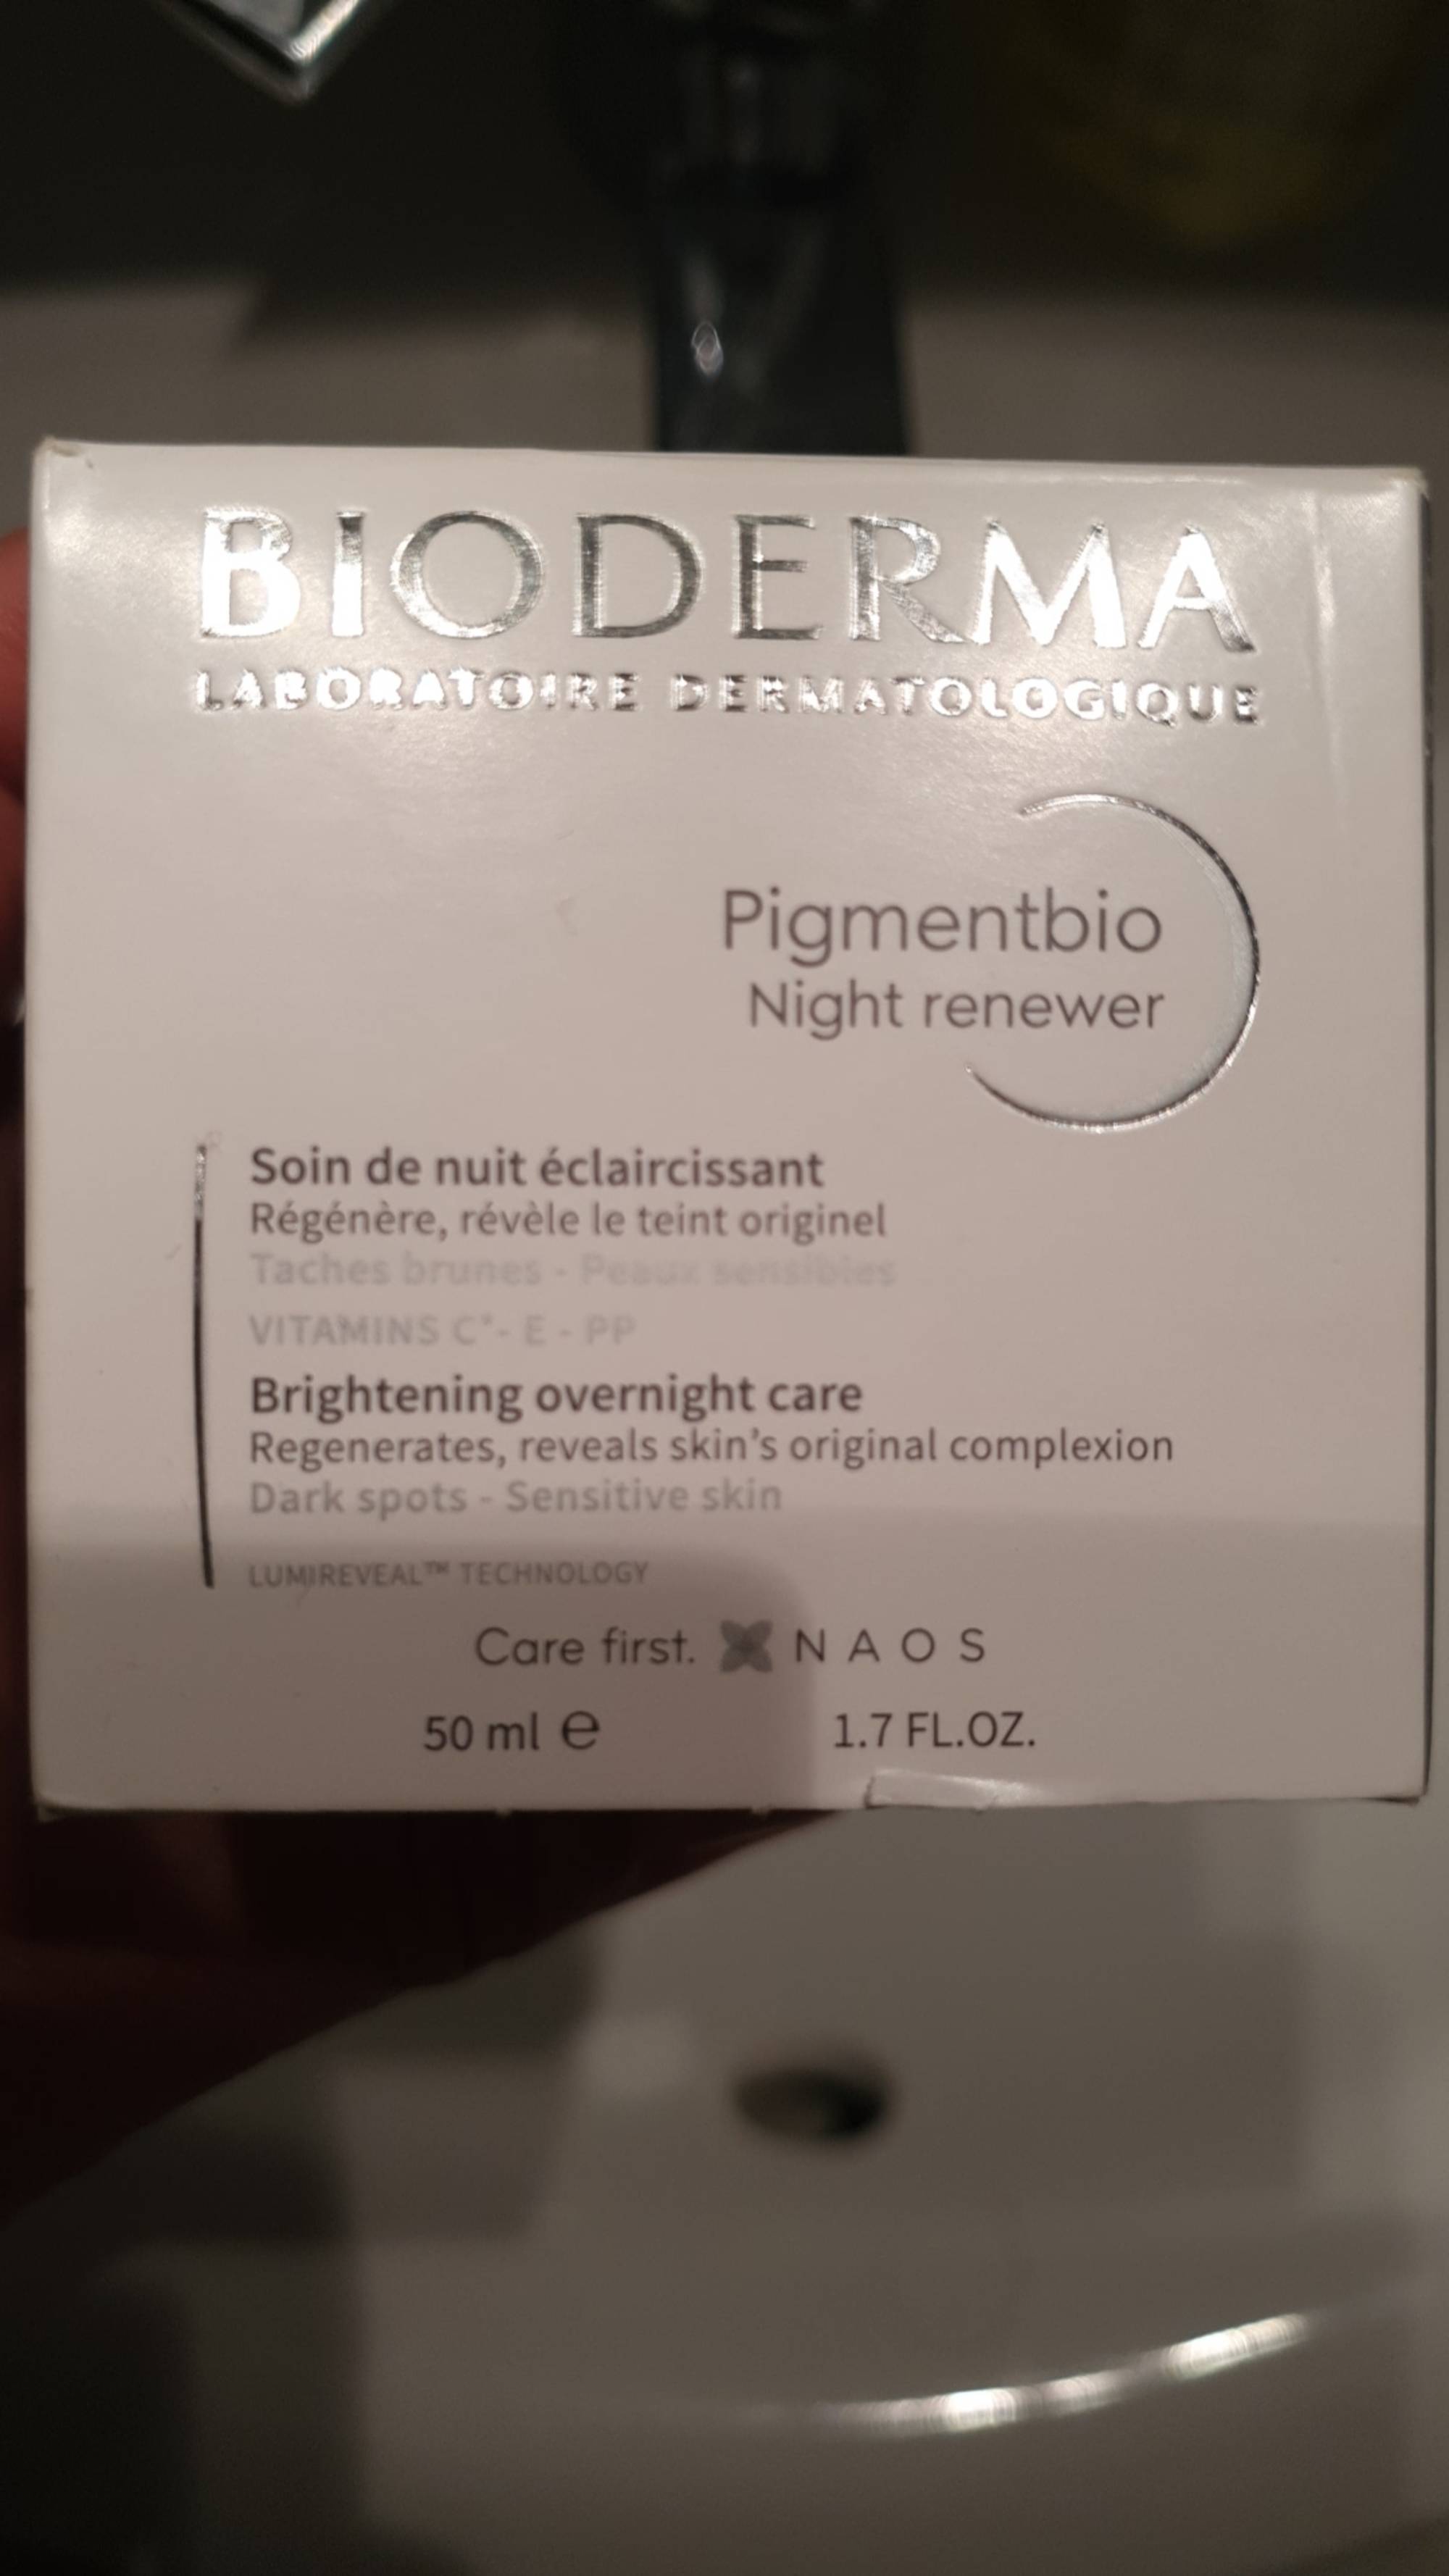 BIODERMA - Pigmentbio - Soin de nuit éclaircissant